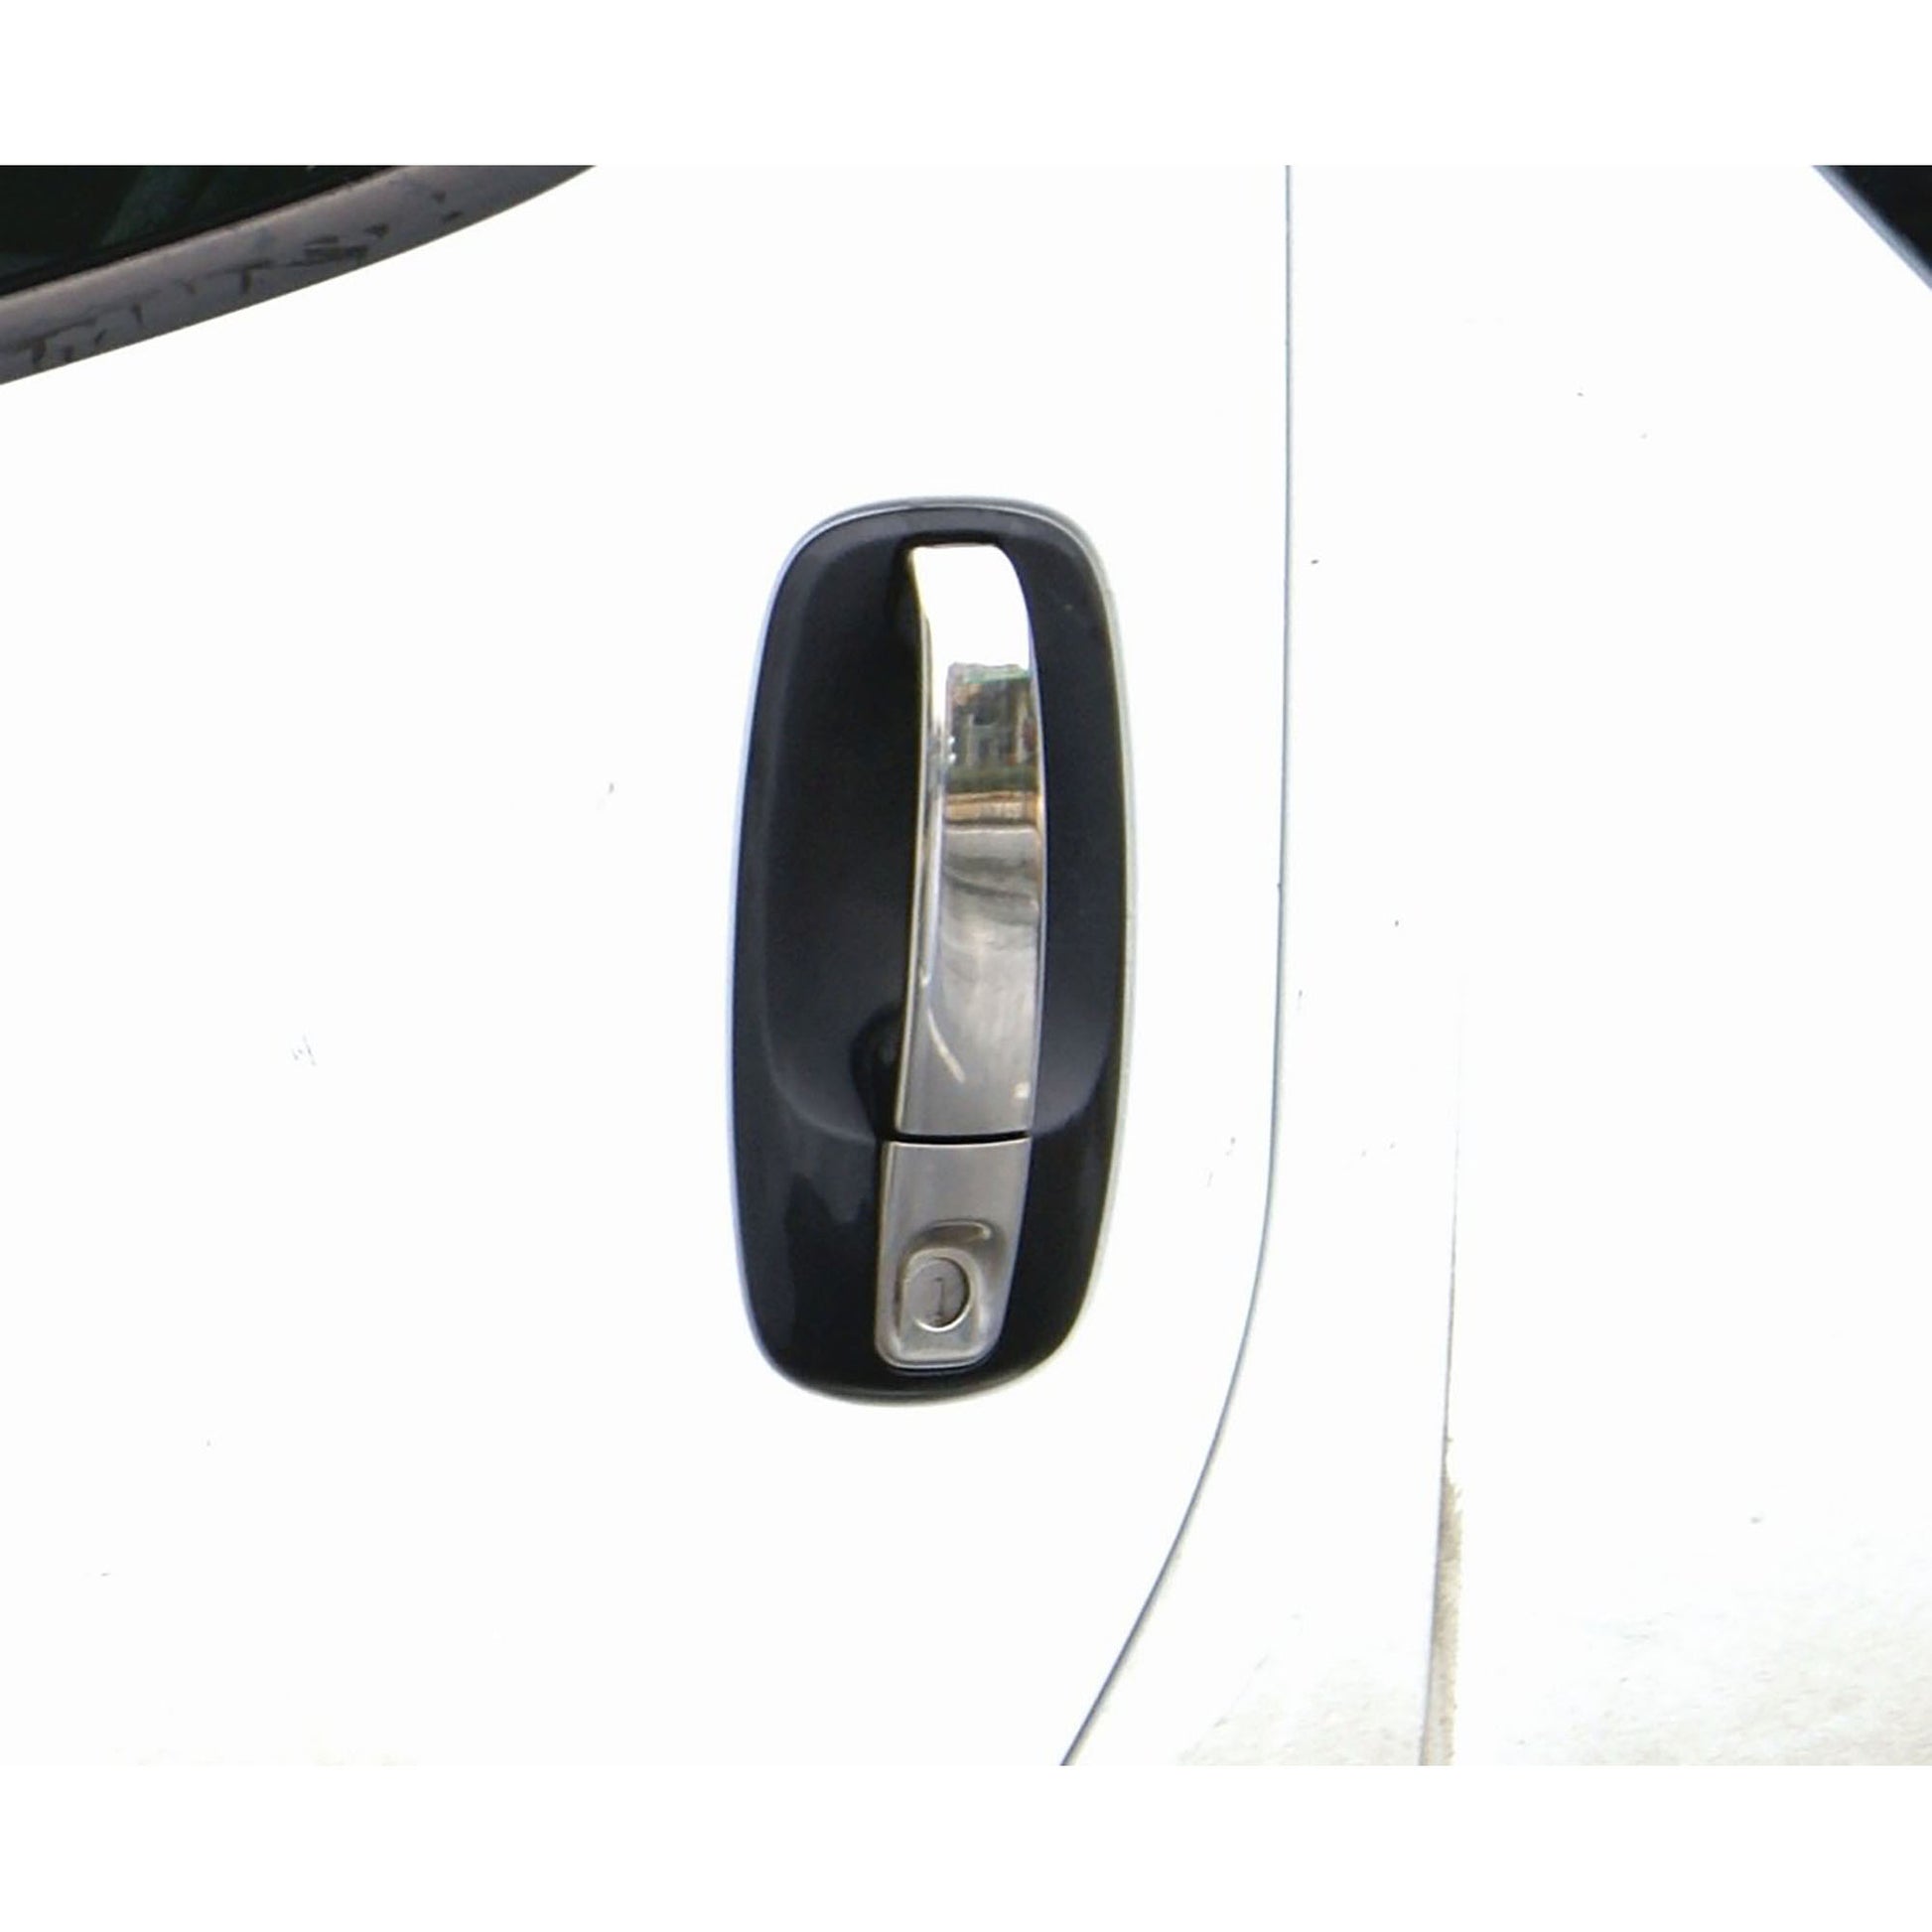 Renault Trafic Kapı Kolu Aksesuarları Detaylı Resimleri, Kampanya bilgileri ve fiyatı - 2